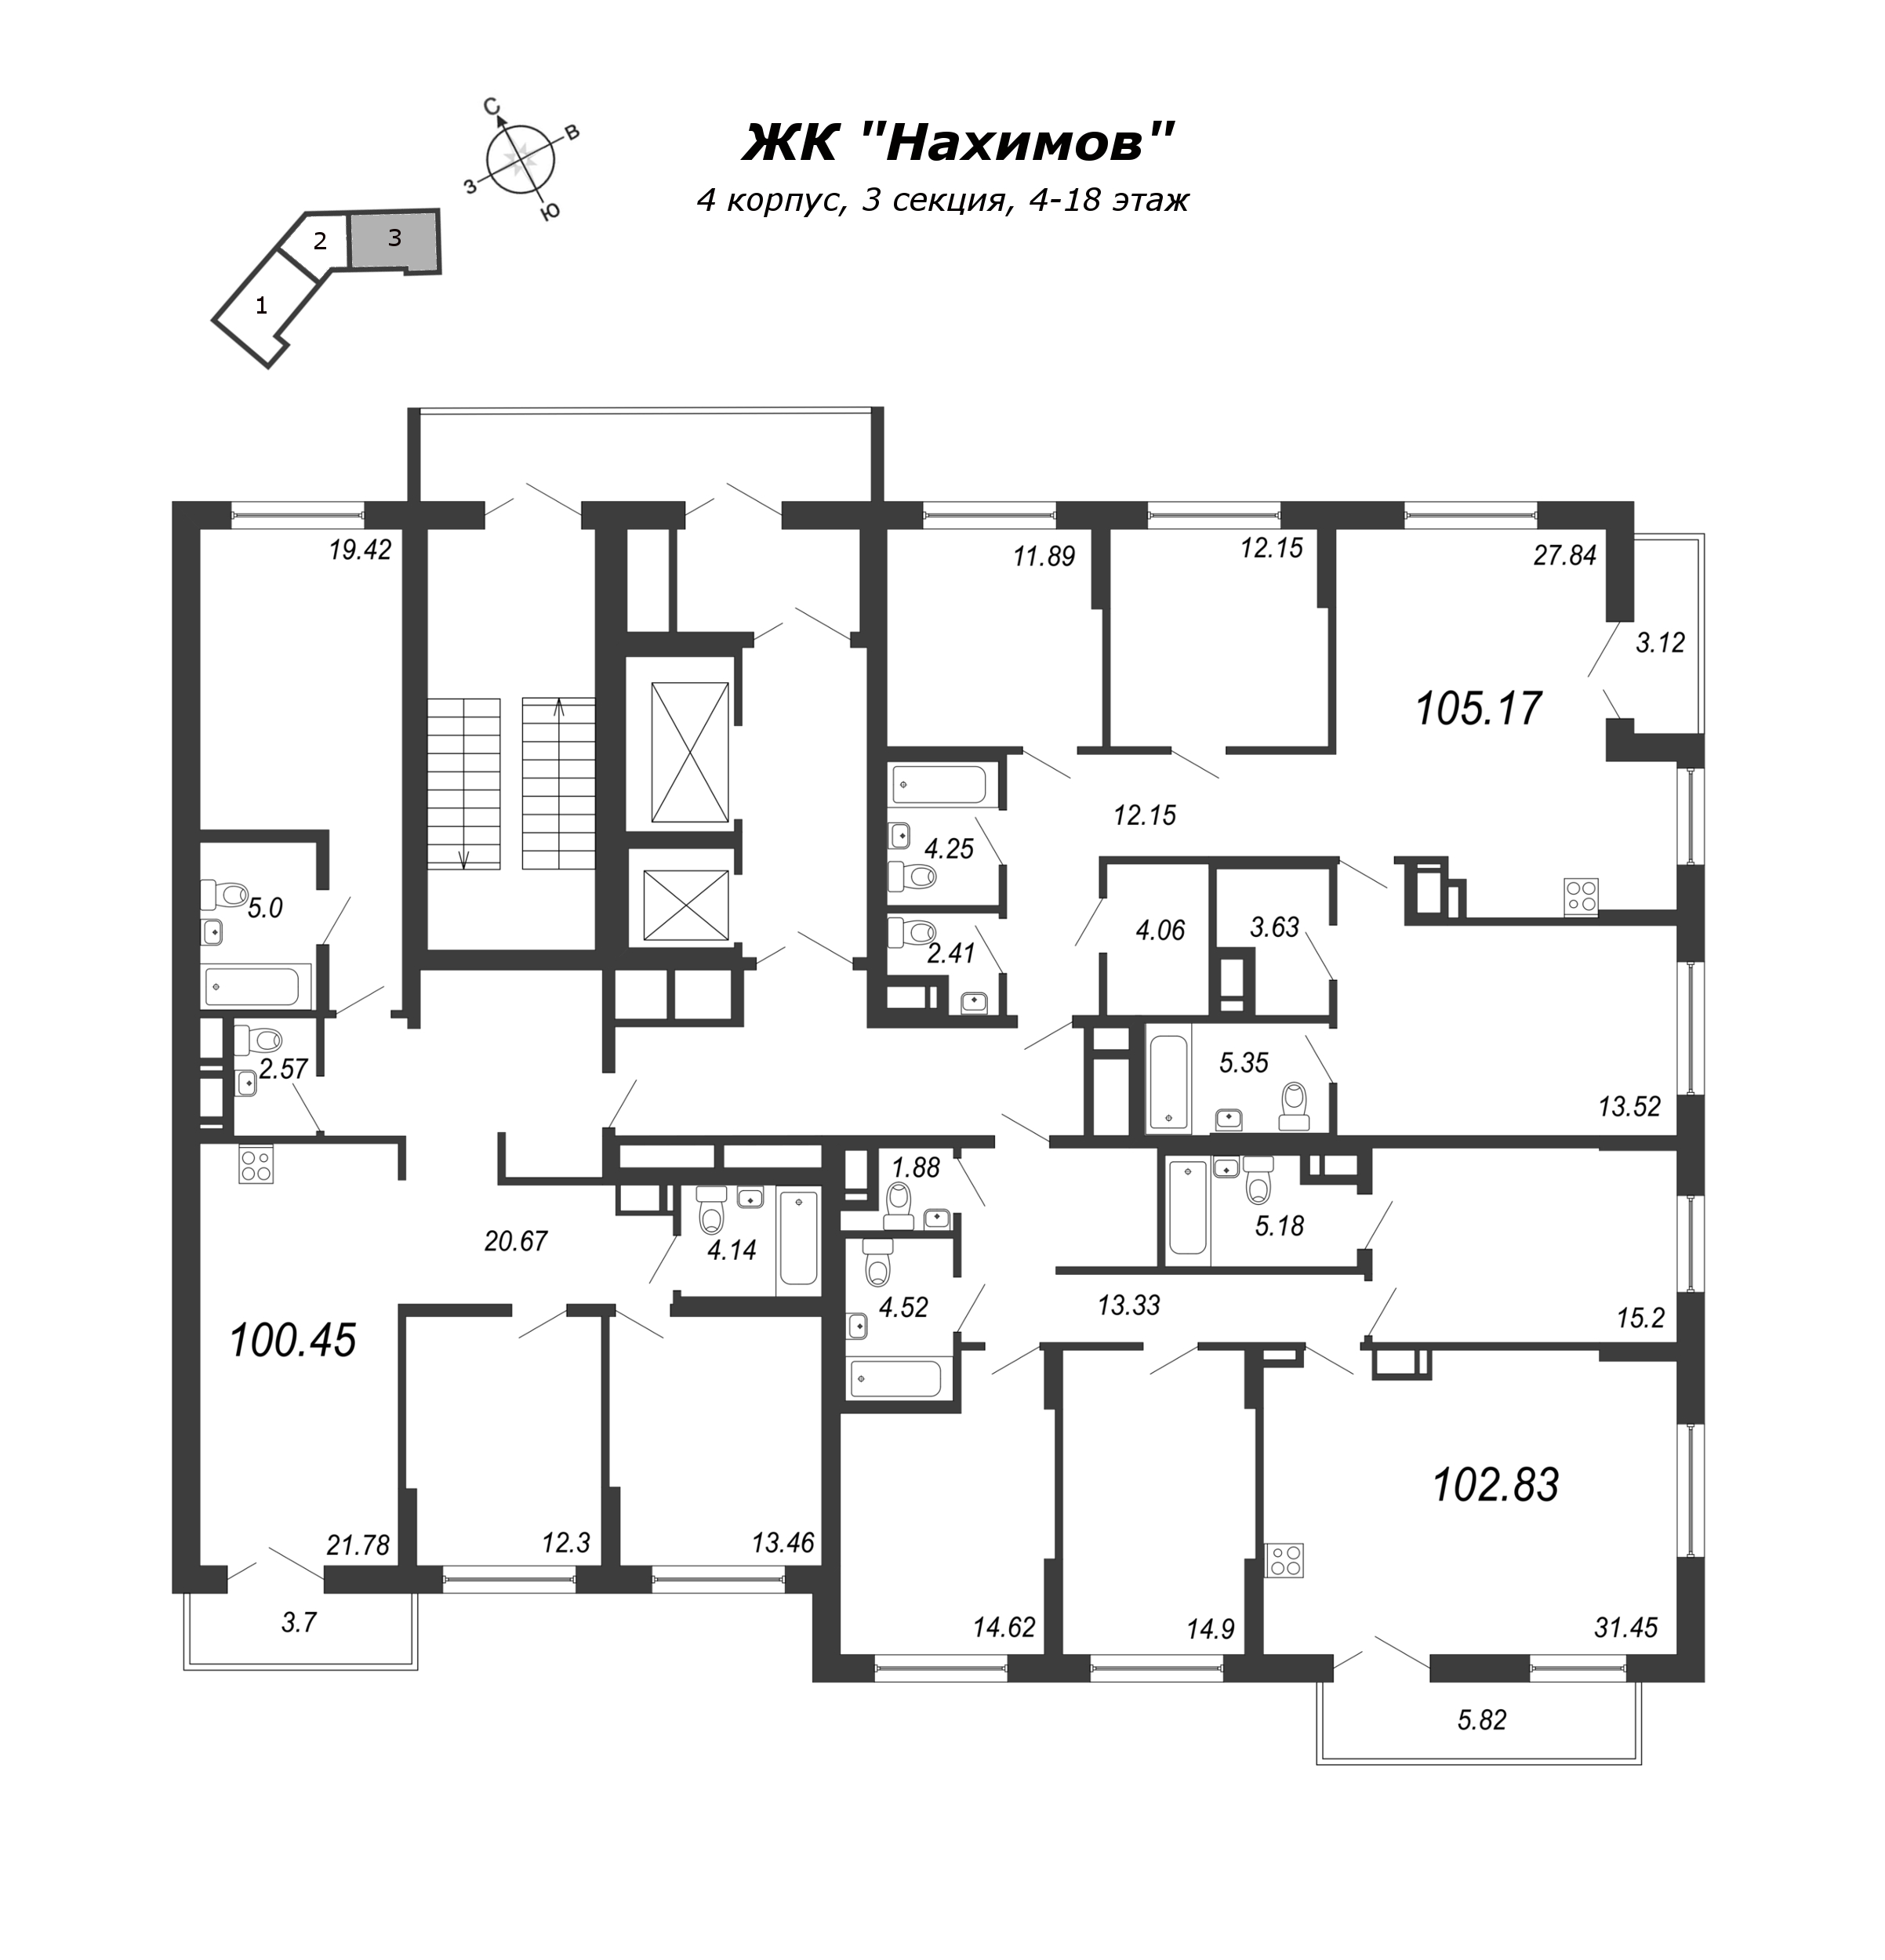 4-комнатная (Евро) квартира, 100 м² в ЖК "Нахимов" - планировка этажа